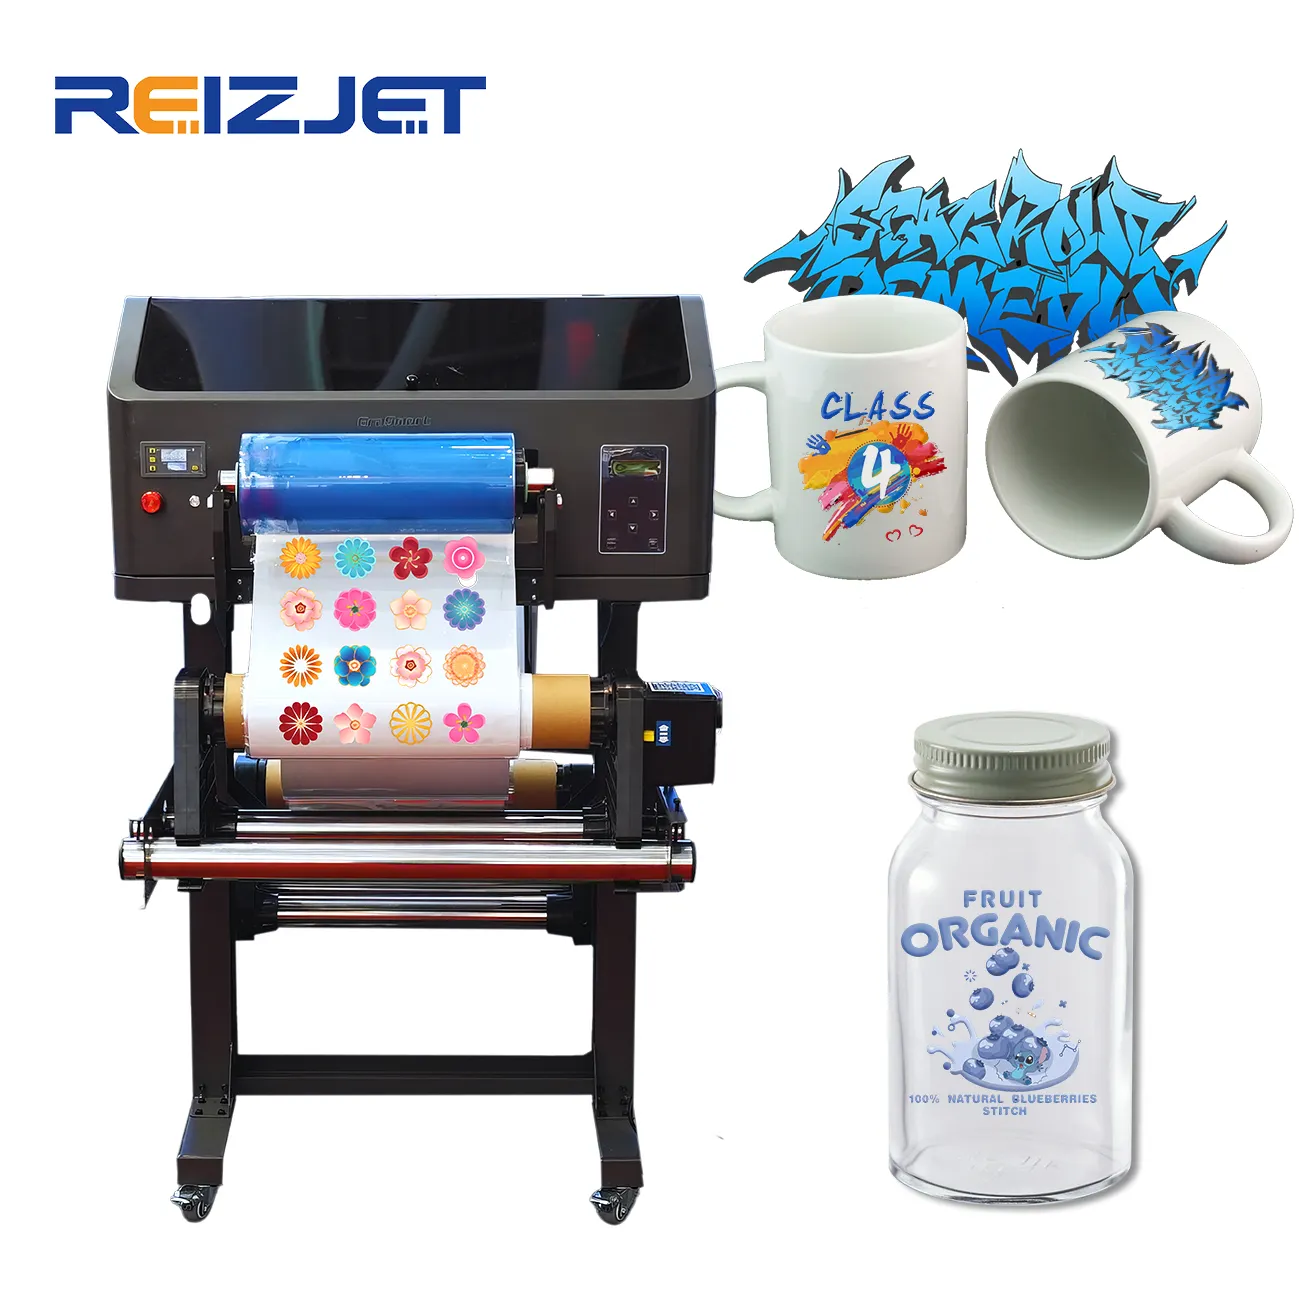 Reizjet double XP600 rouleau à rouleau machine d'impression d'étiquettes autocollantes imprimante A3 UV DTF avec plastifieuse